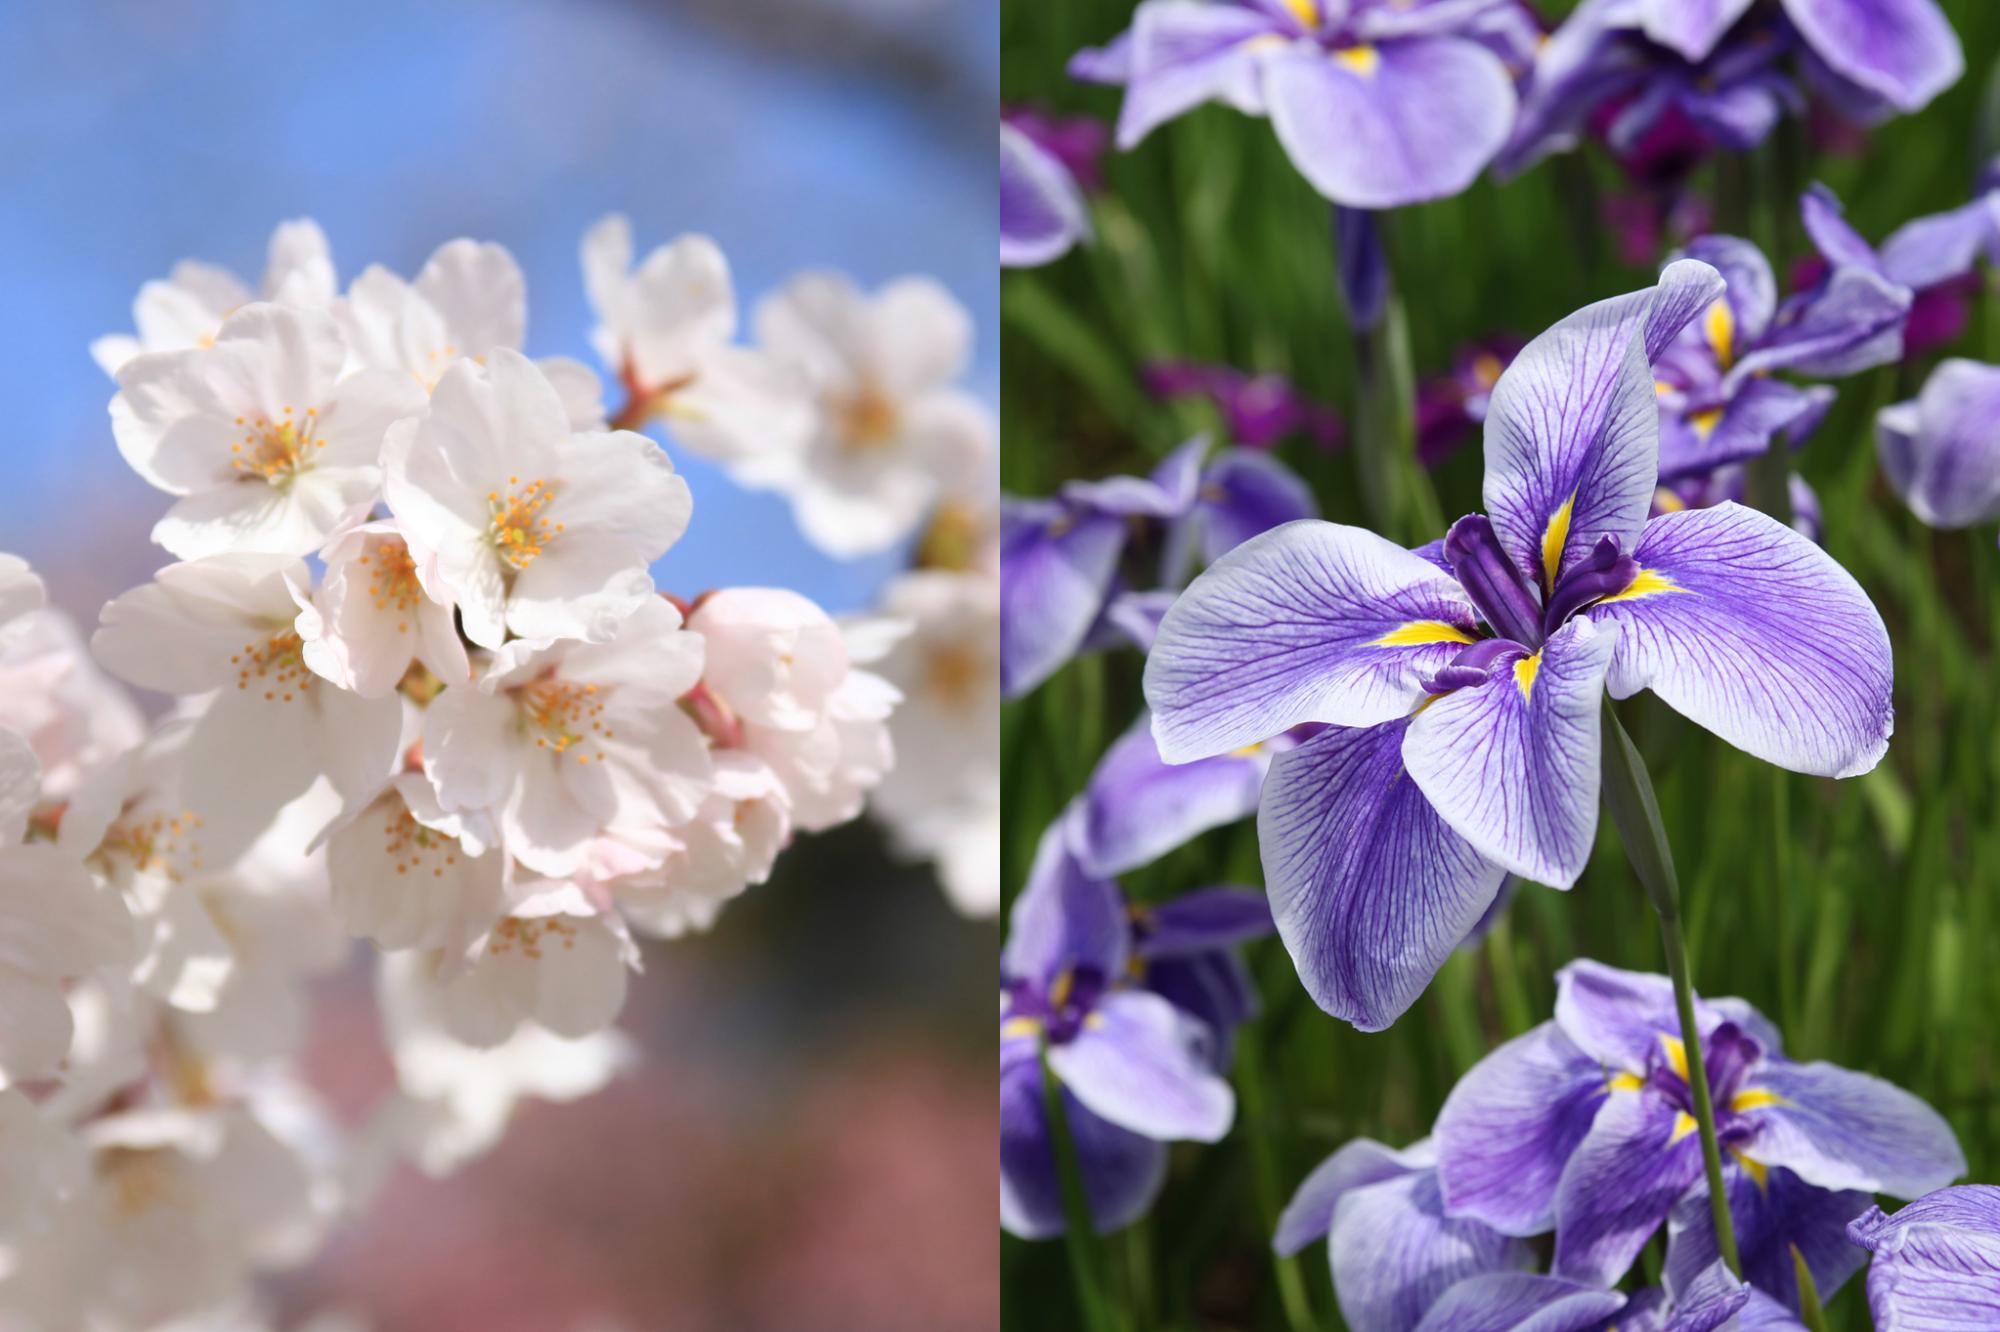 左側が佐倉市の木/桜（さくら）の写真、右側が佐倉市の花/花菖蒲（はなしょうぶ）の写真